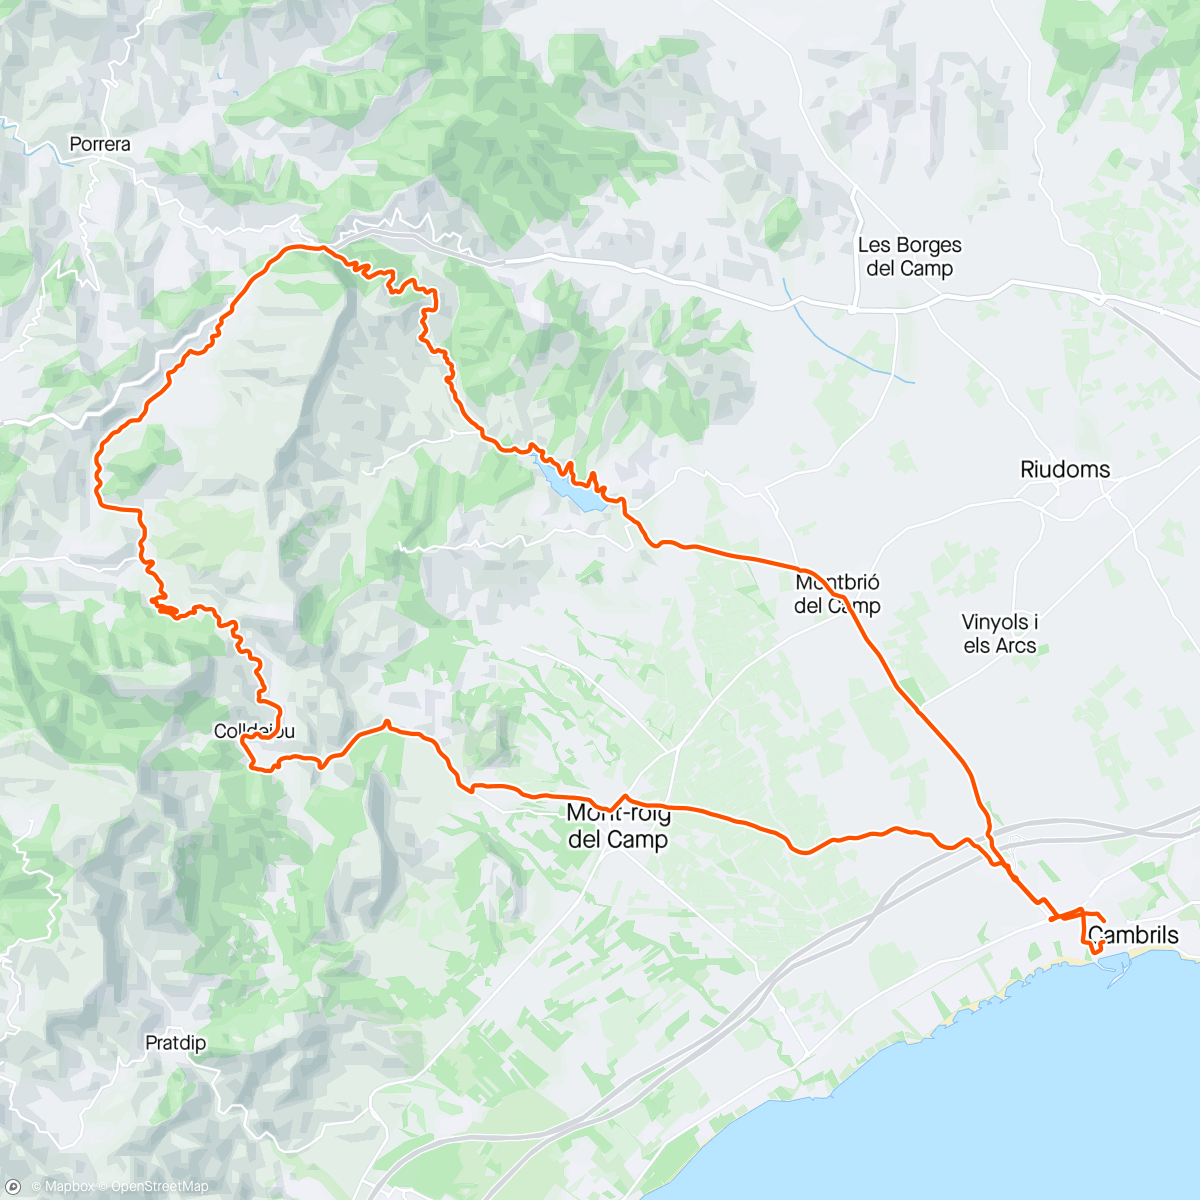 Map of the activity, Colldejou, Teixeta